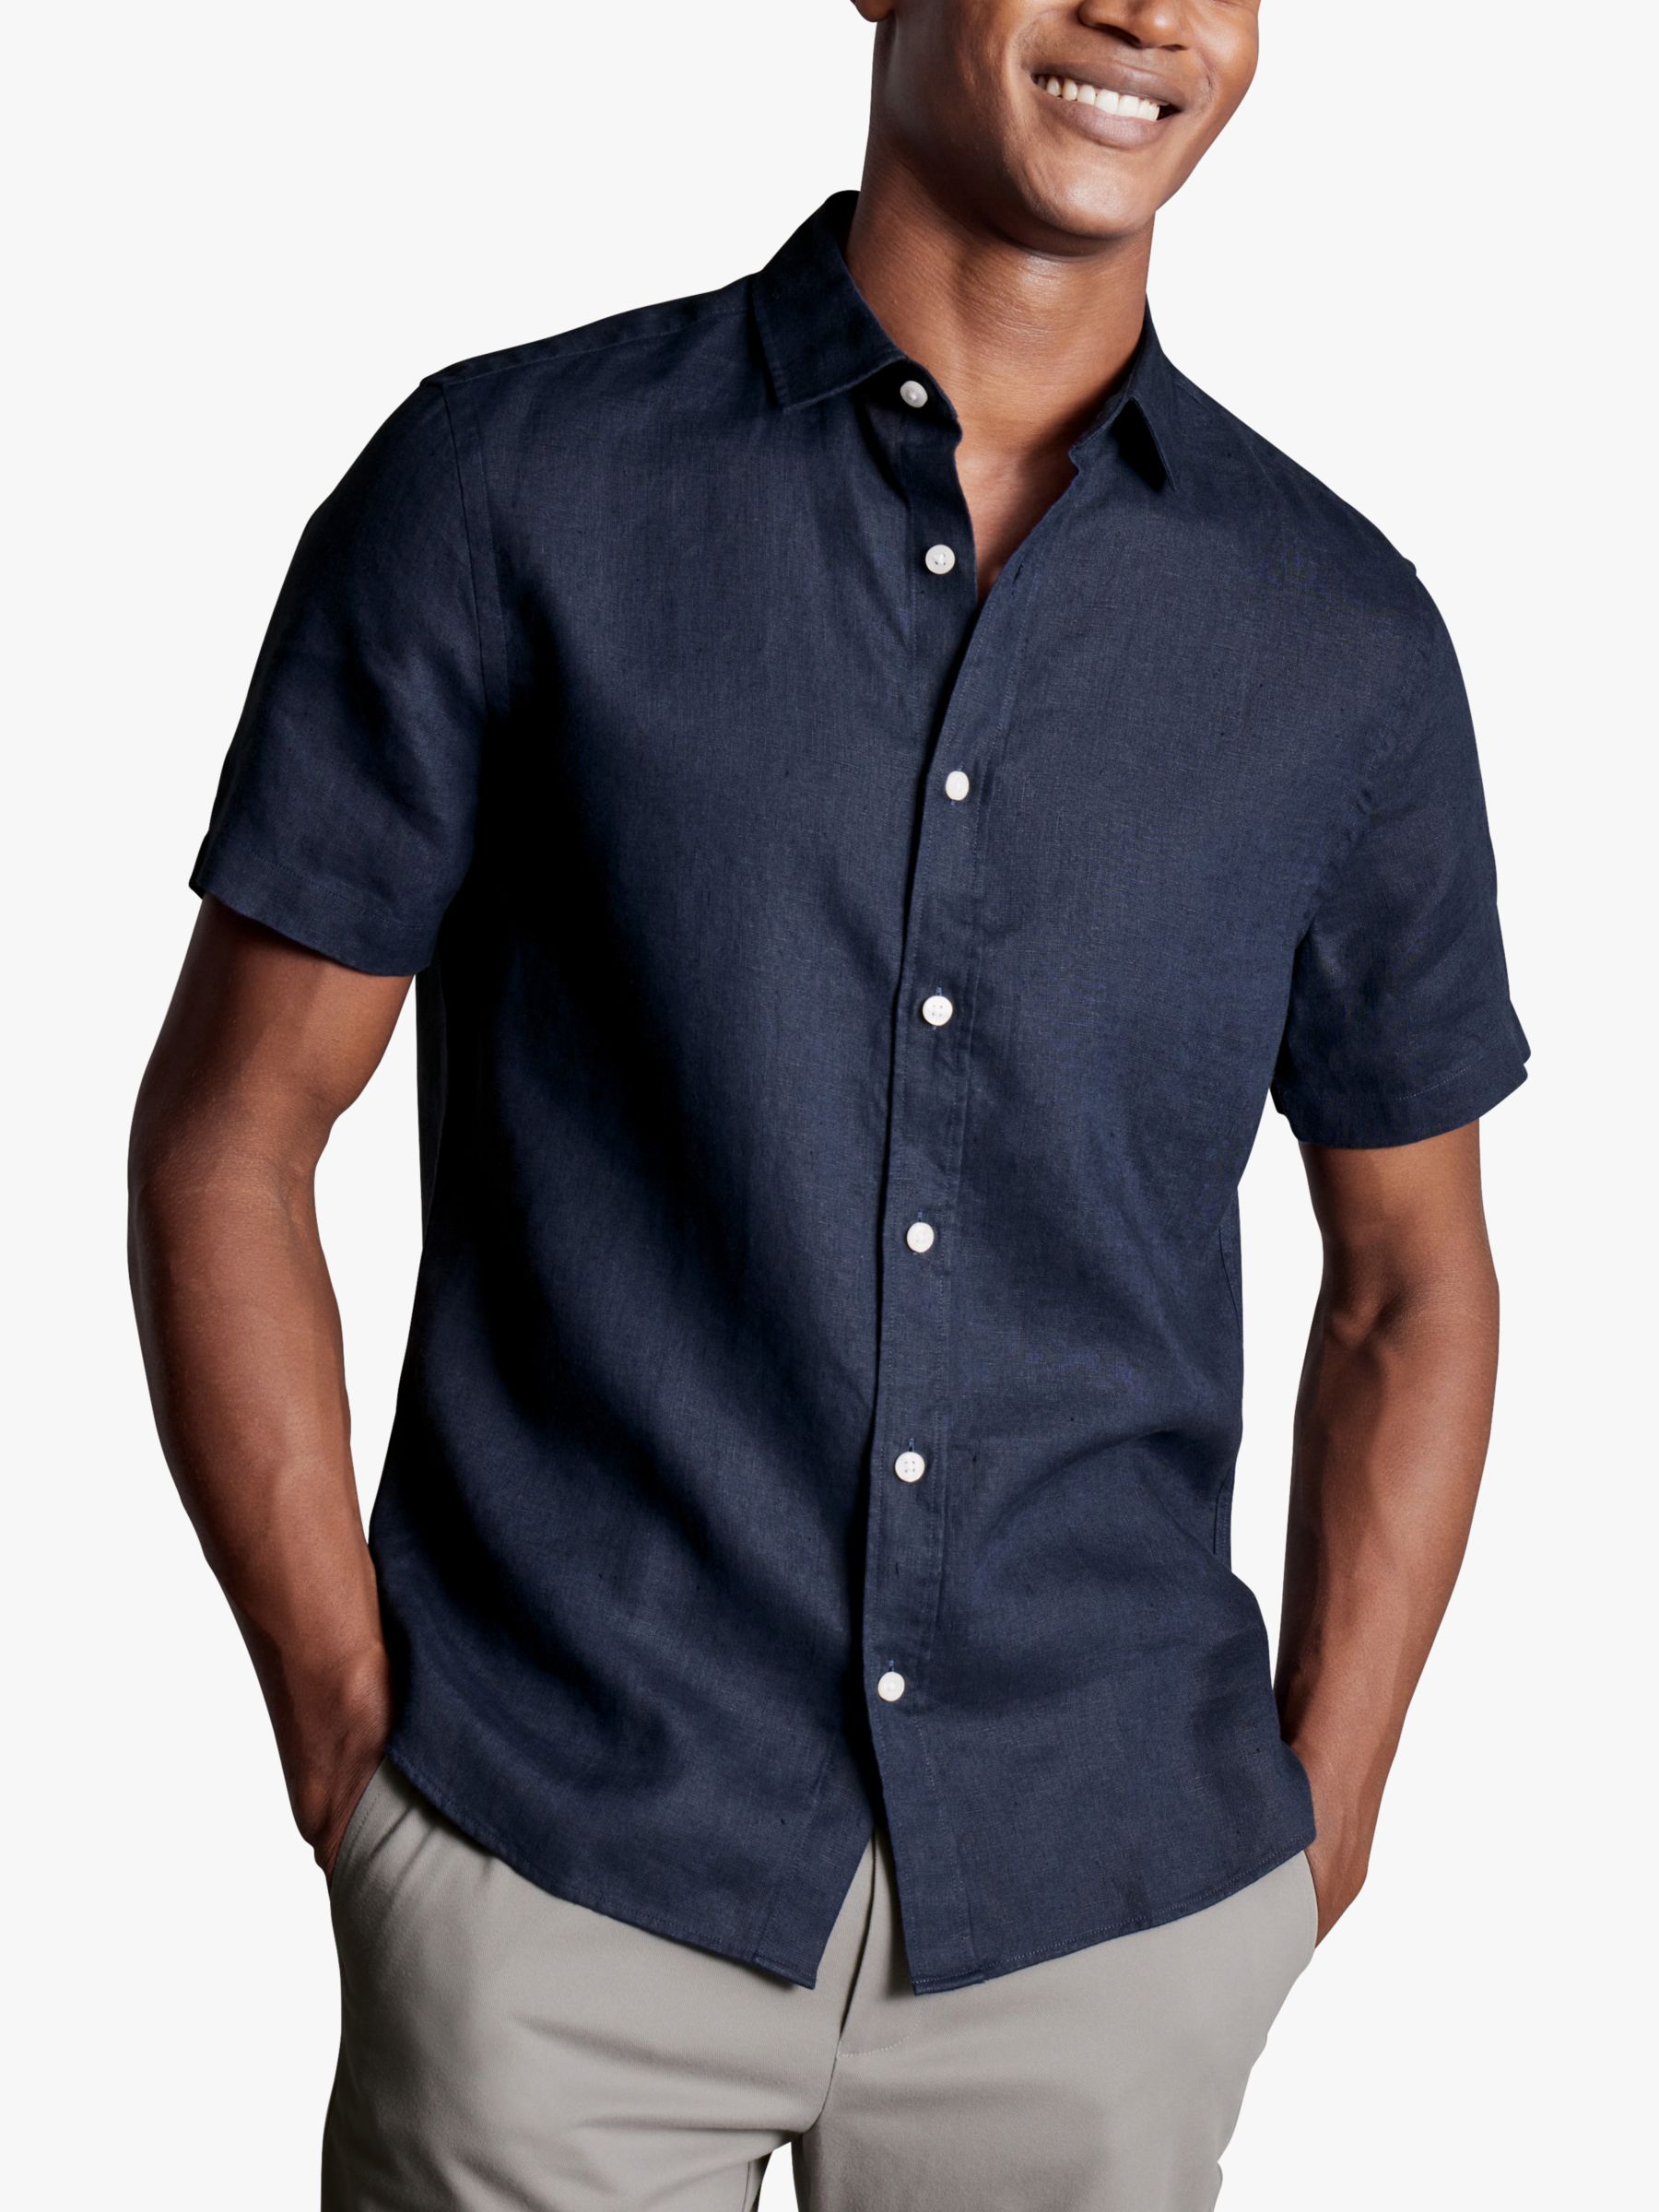 Charles Tyrwhitt Linen Short Sleeve Shirt at John Lewis & Partners